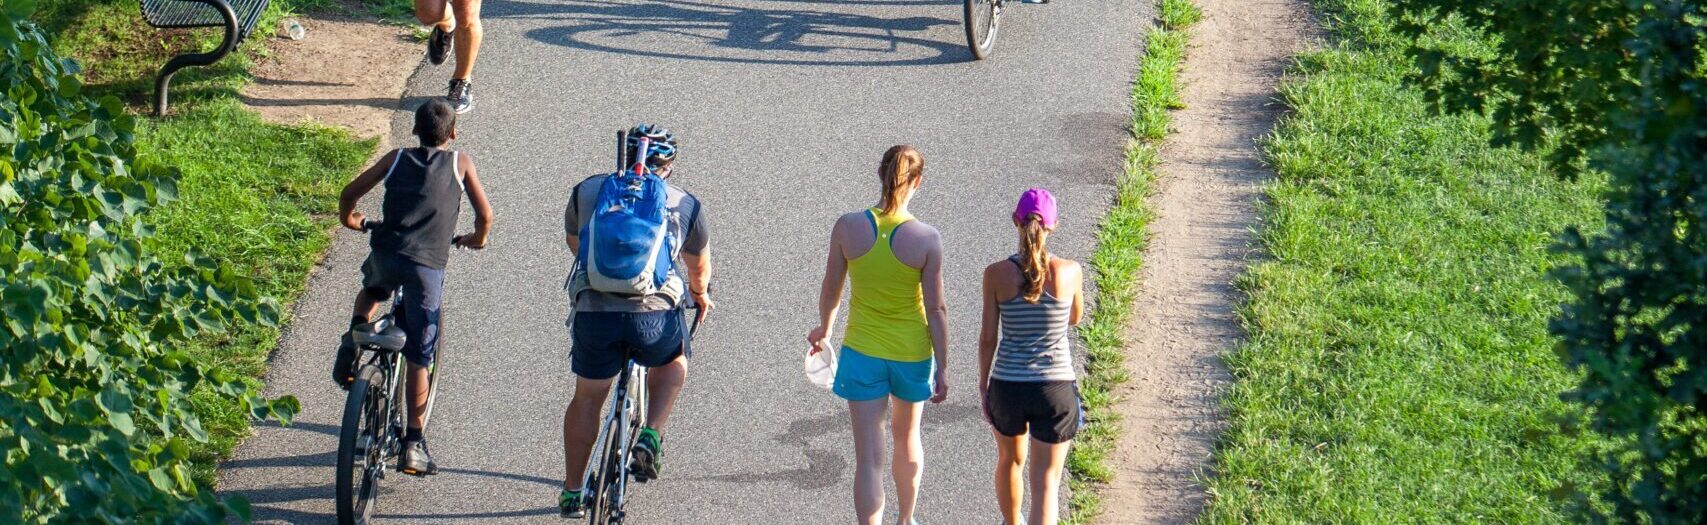 Fietspad met fietsers en voetgangers